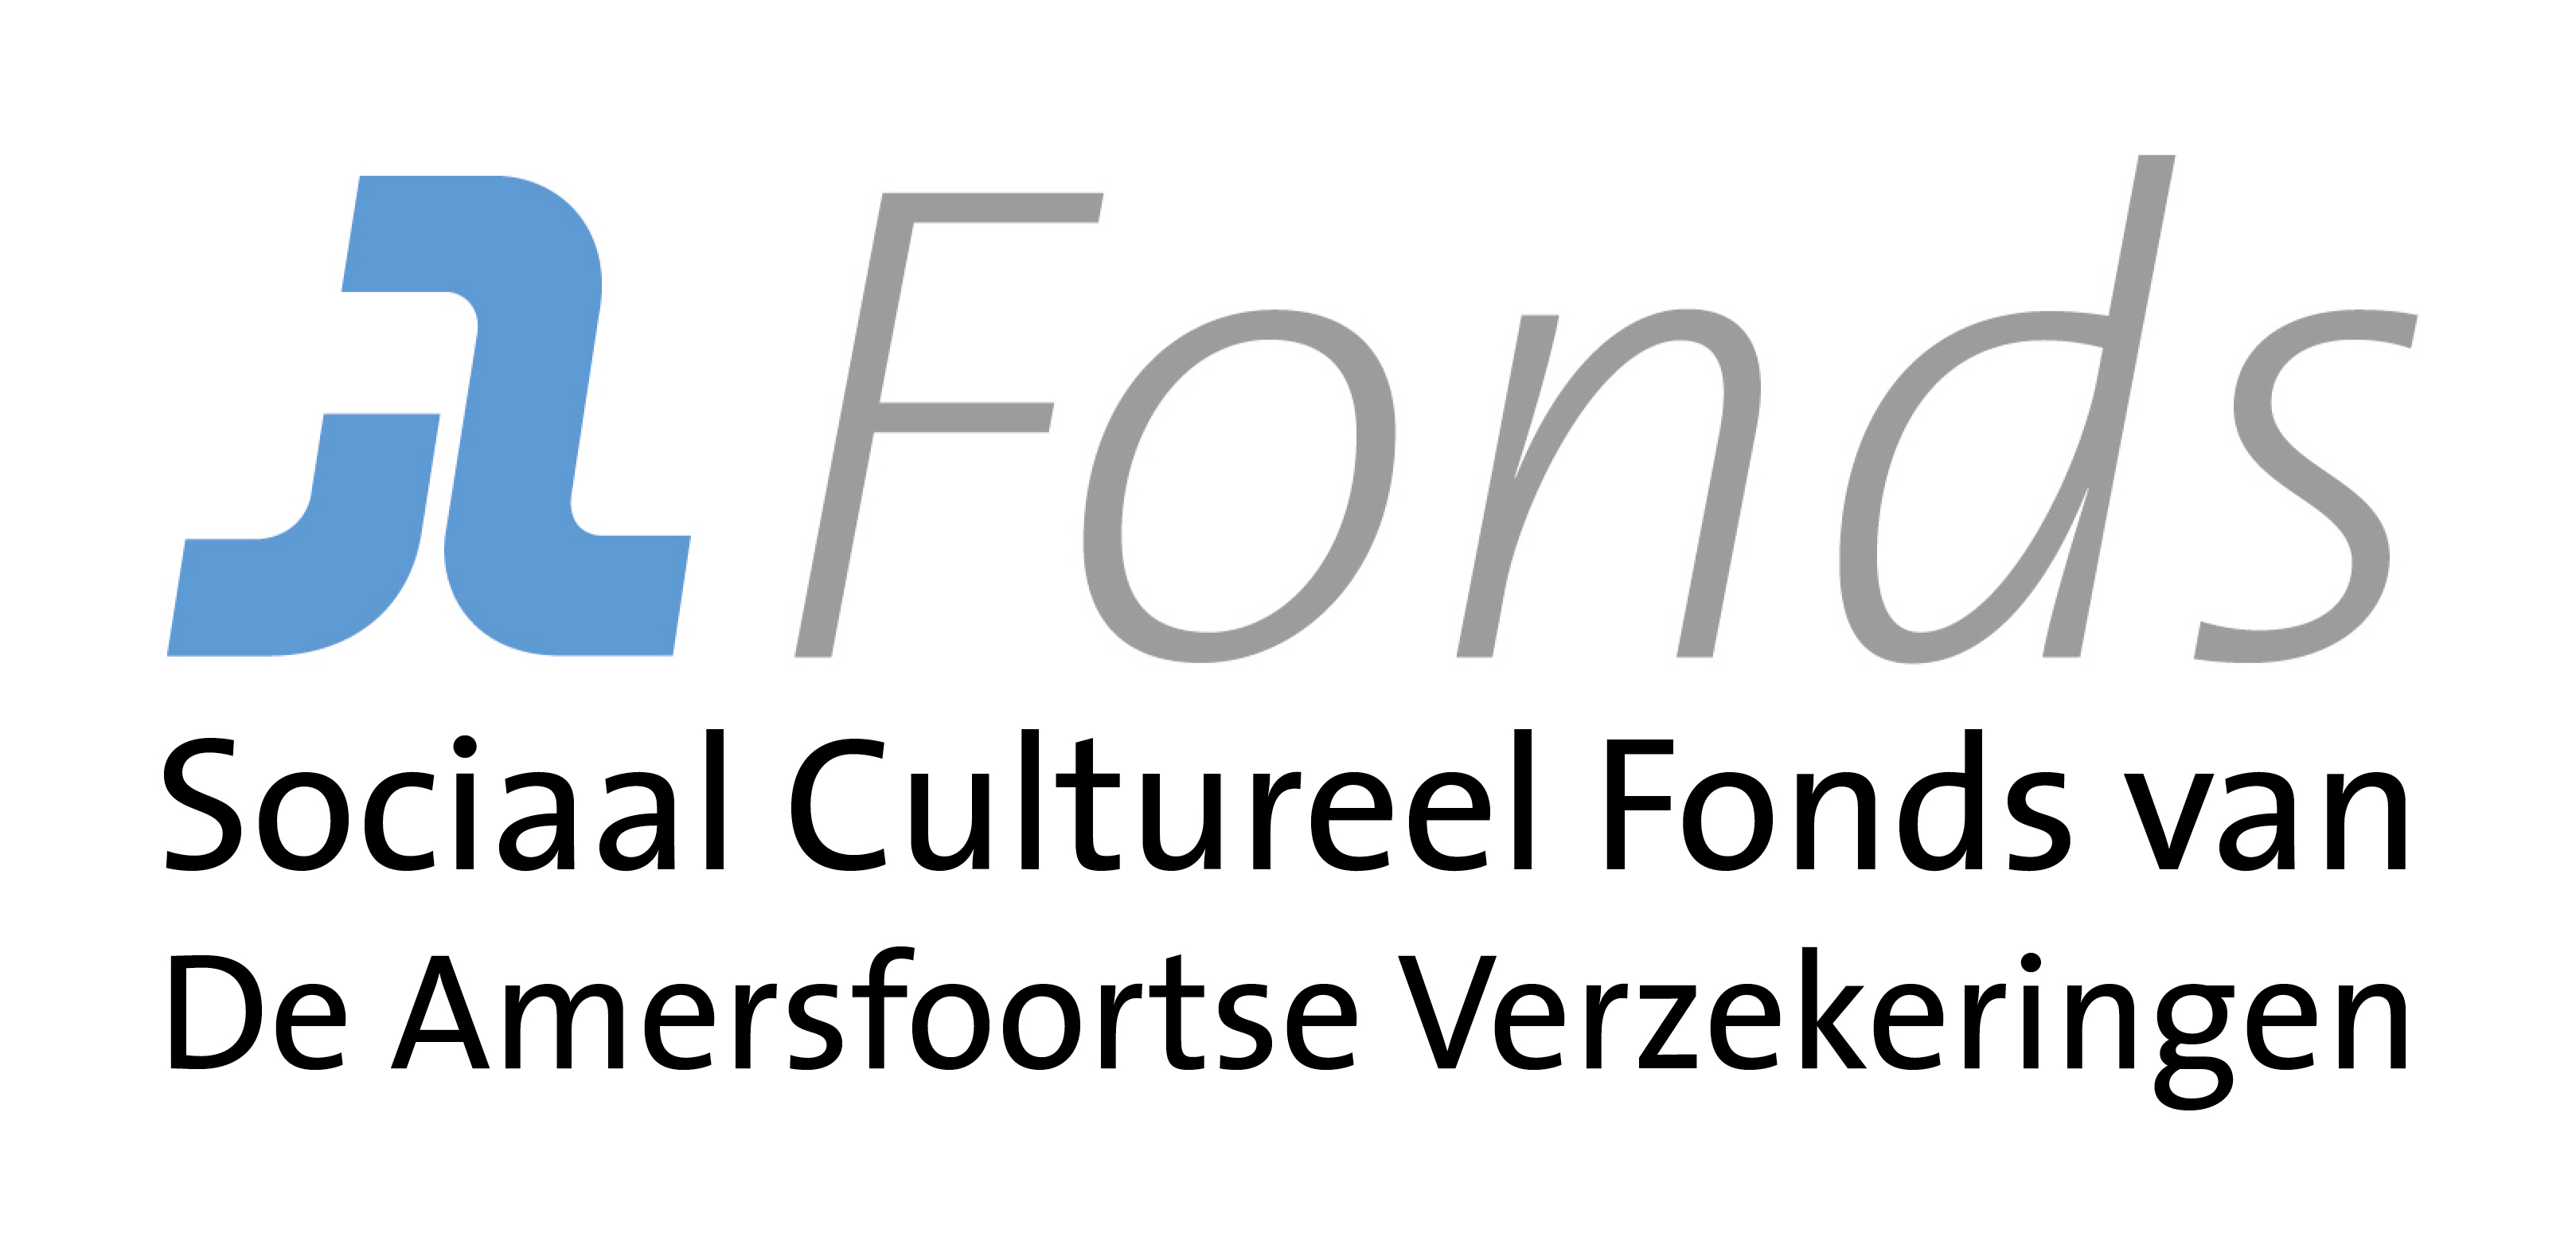 Stichting Sociaal Cultureel Fonds van de Amersfoortse Verzekeringen